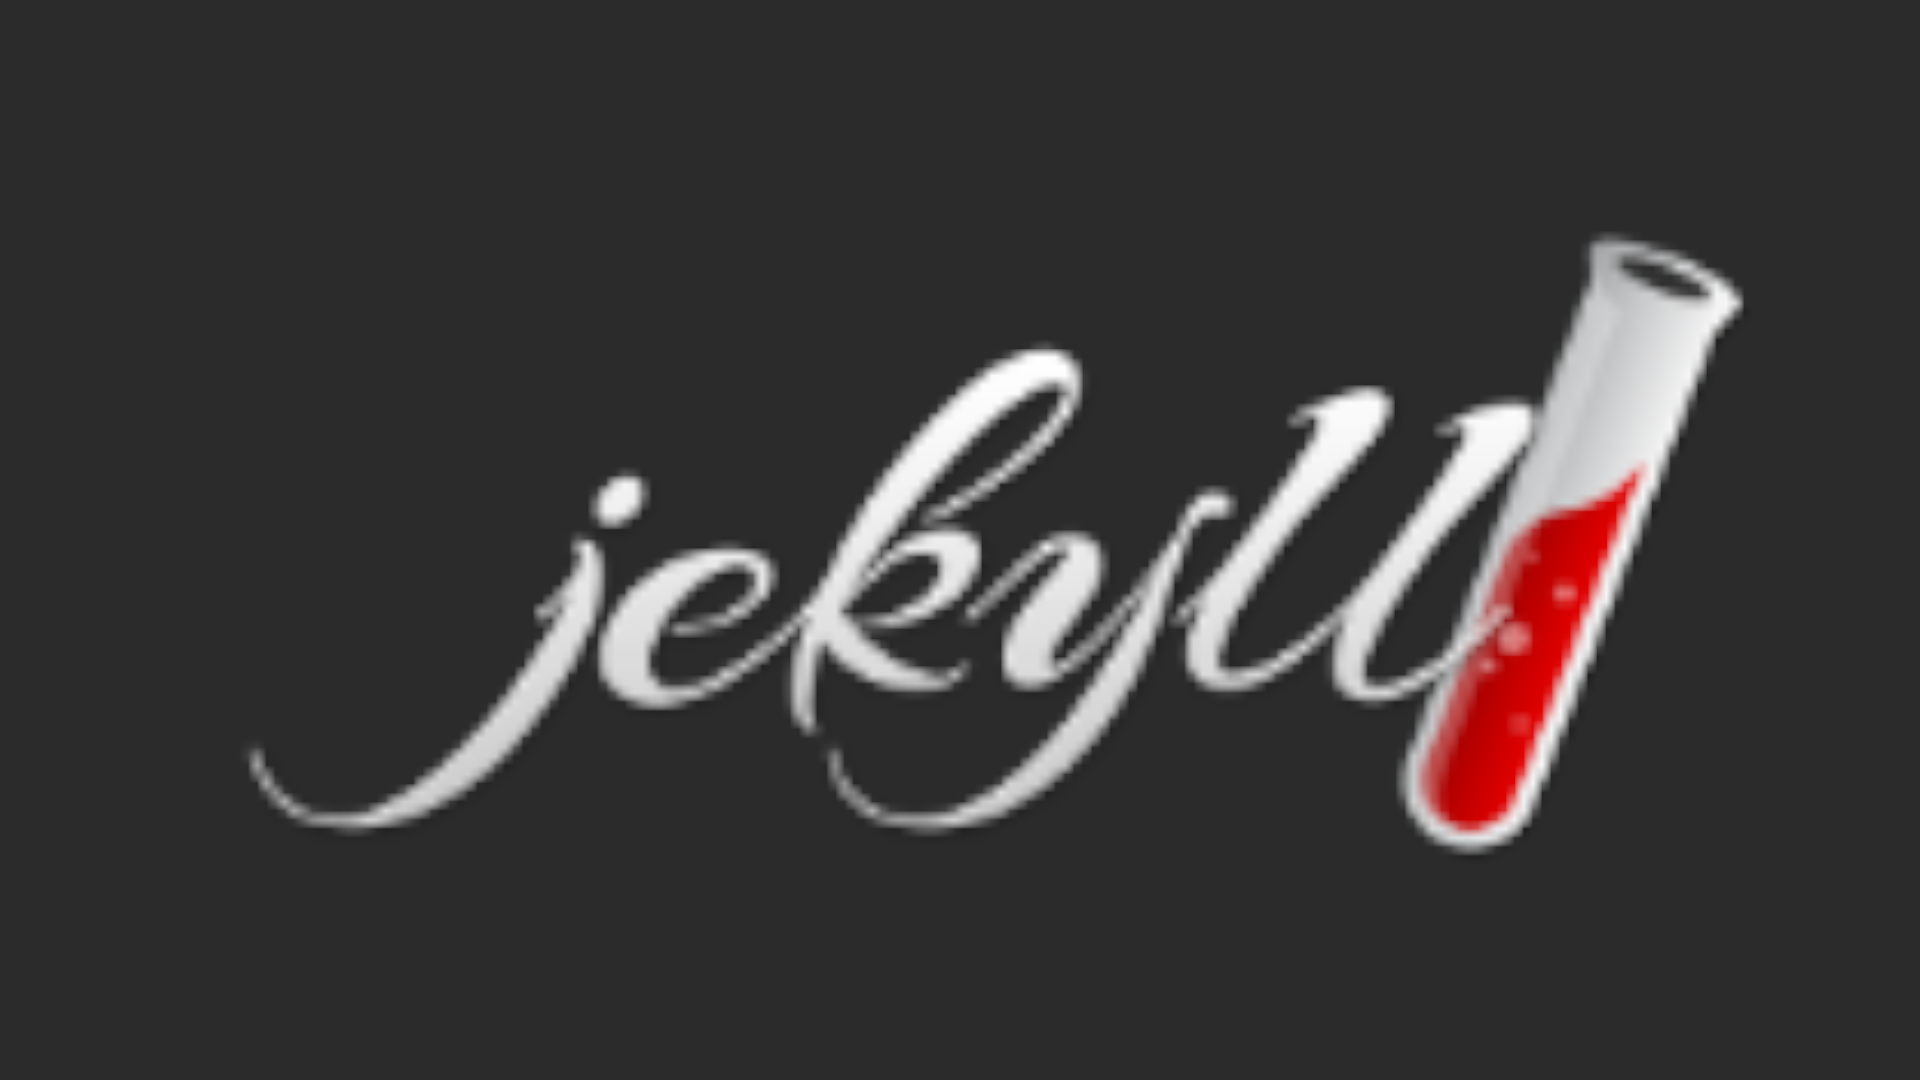 サイトをJekyllに移動しました。